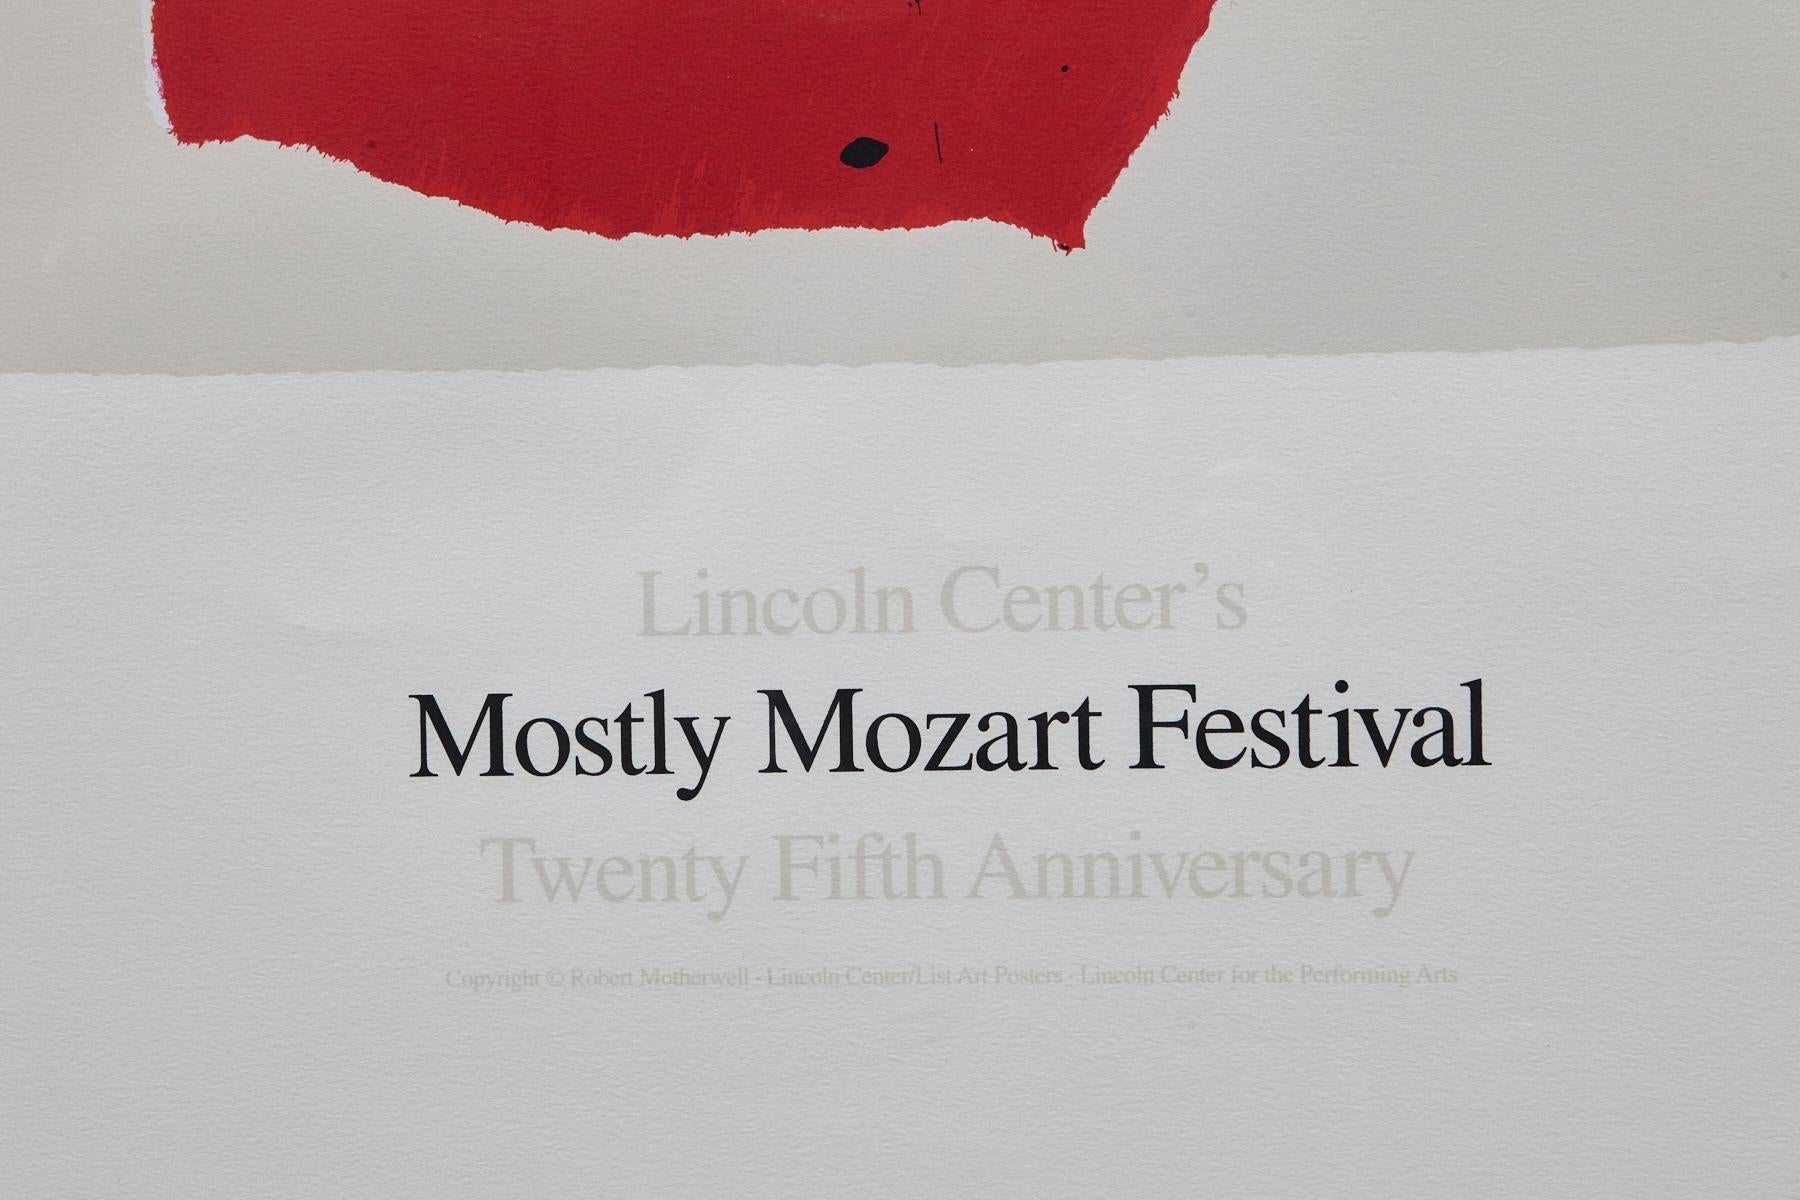 Das Mostly Mozart Festival des Lincoln Center – 25. Jahrestag des Lincoln Center (Grau), Abstract Print, von Robert Motherwell